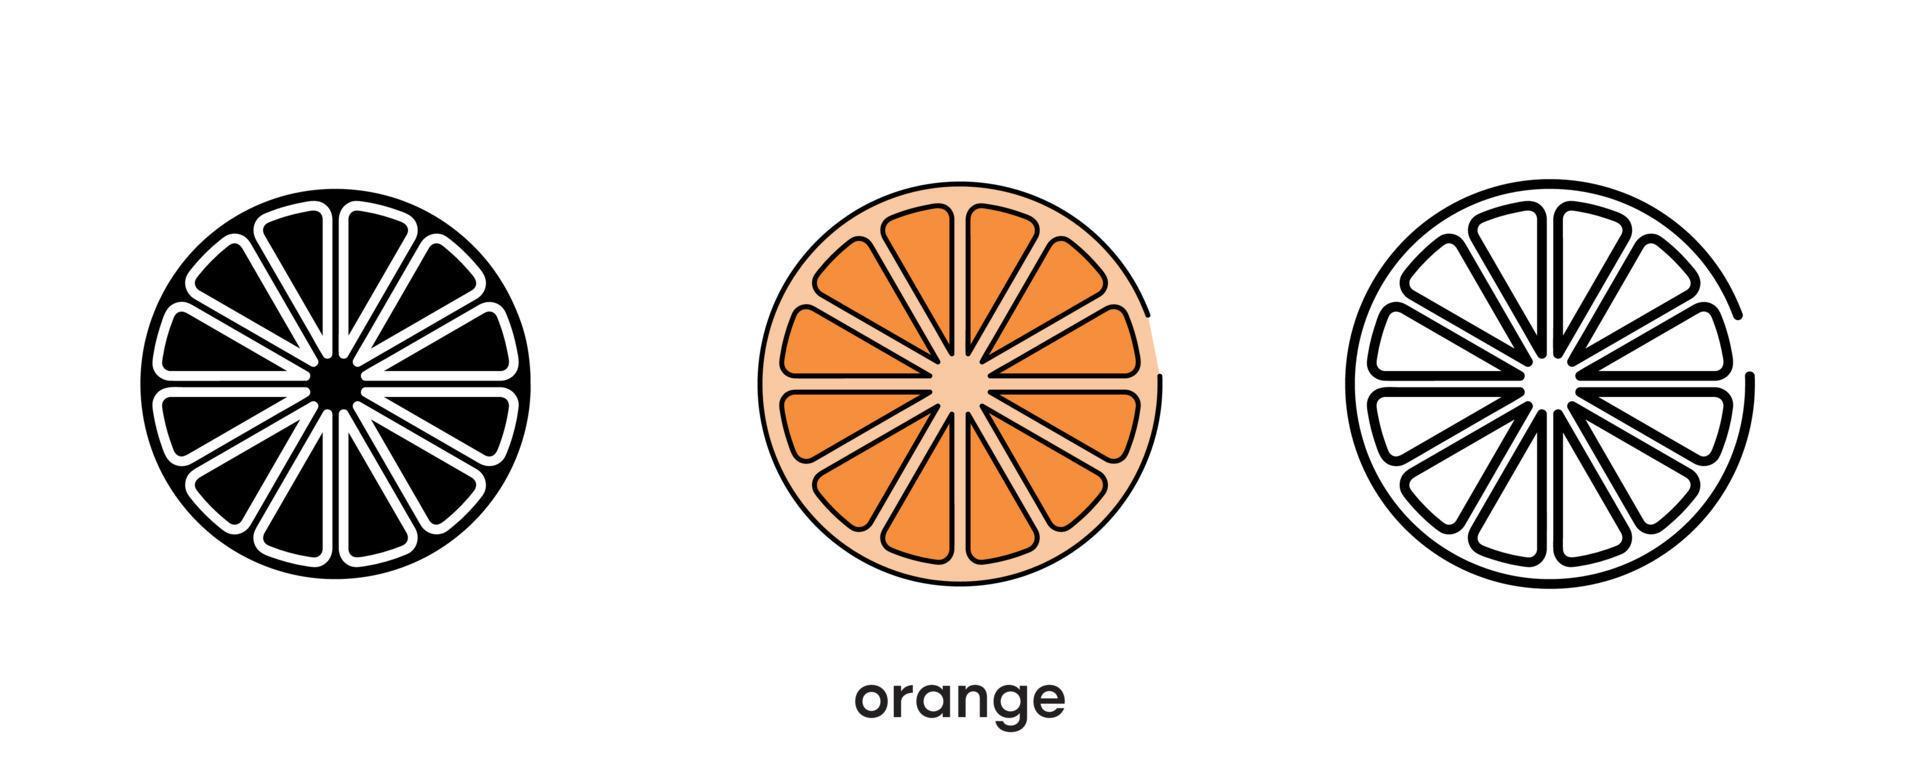 disegno dell'icona arancione. icona arancione incastonata in silhouette, colorata e lineare. illustrazione vettoriale della linea dell'icona della frutta isolata su uno sfondo pulito per il design del logo dell'applicazione mobile web. linea moderna.